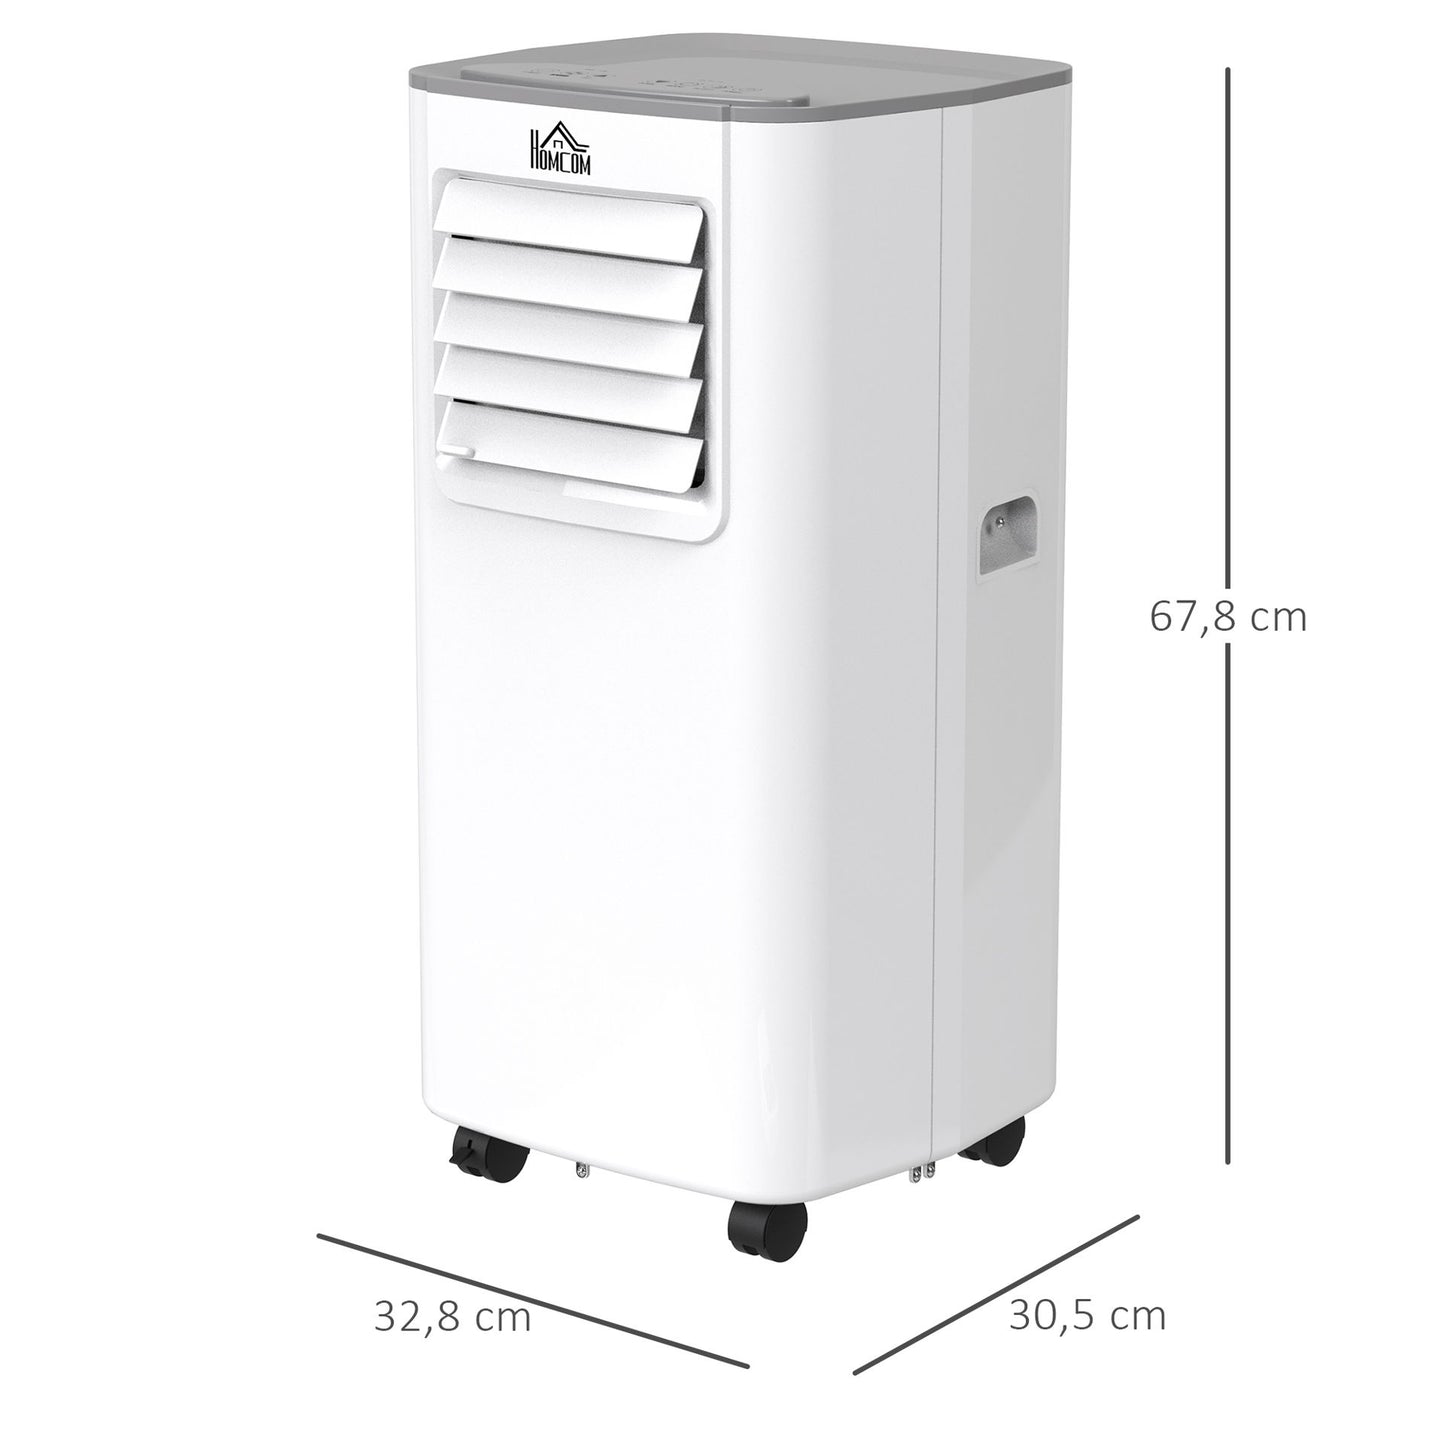 Nancy's Cedar Hill Mobiele airconditioner - 4-in-1 airconditioner met afstandsbediening, koeling, ontvochtiging, ventilator, slaapmodus, voor 8-12㎡